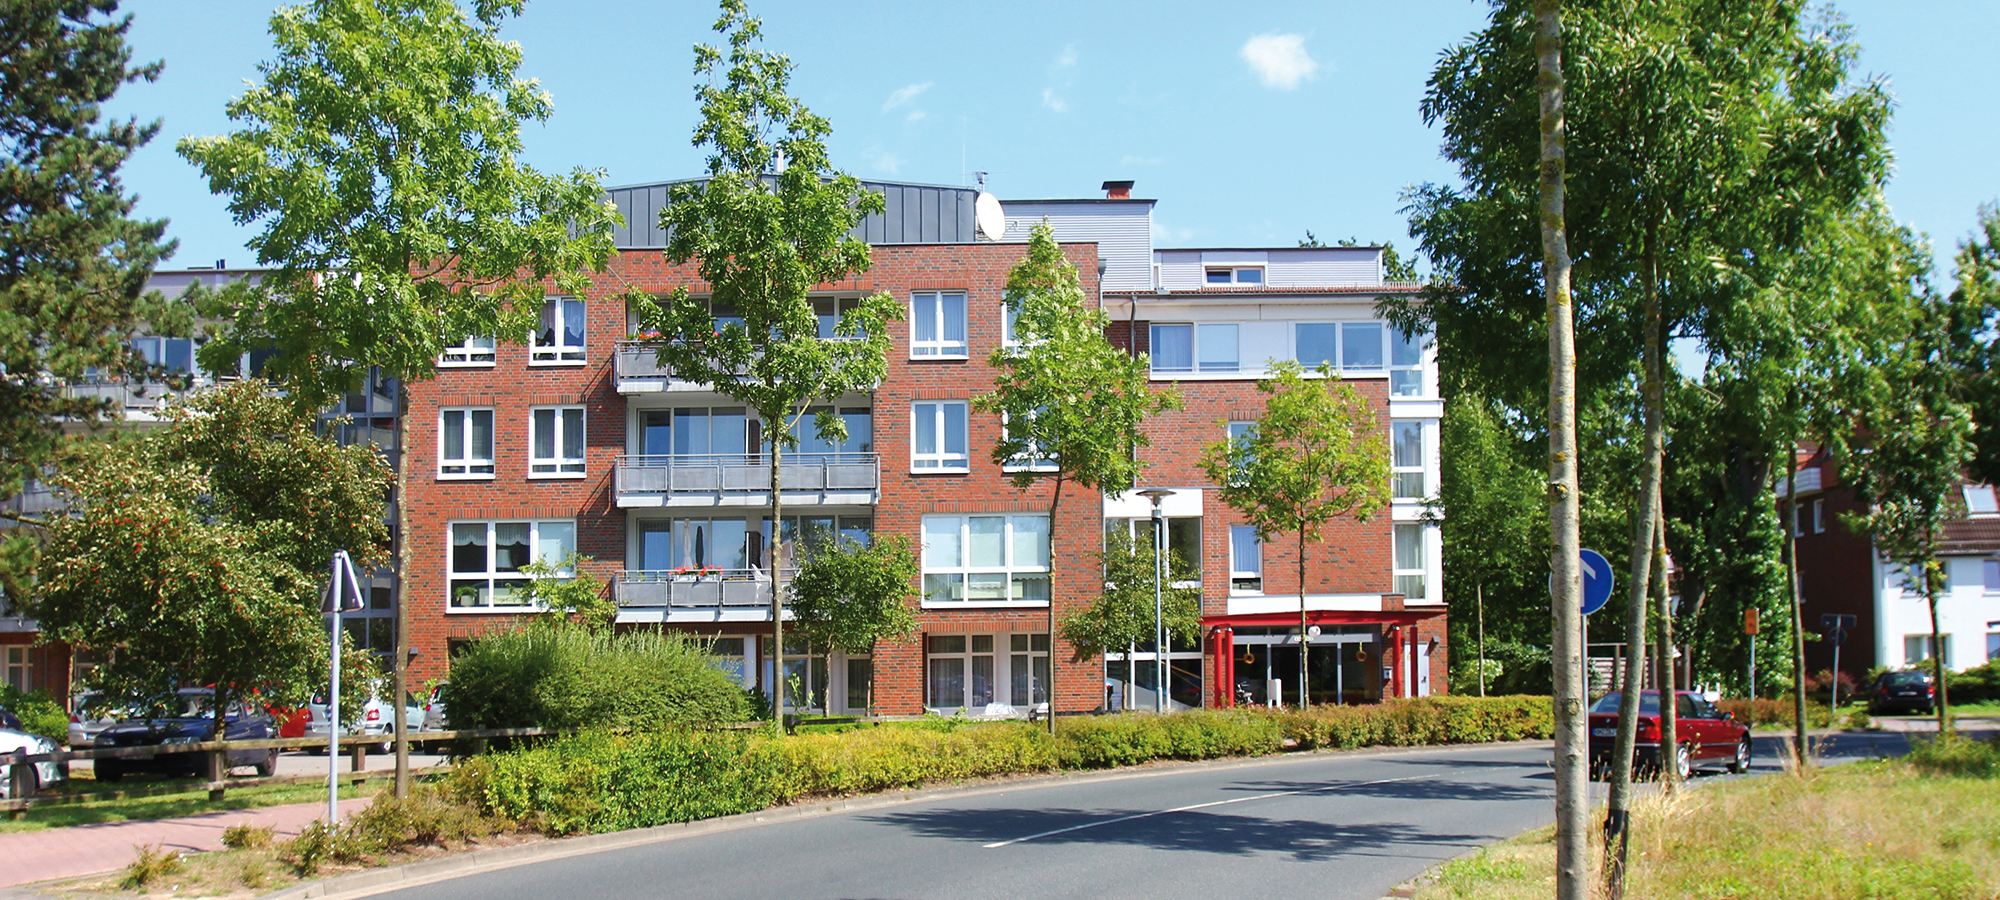 Haus am Dreyerskamp - Servicewohnen in Lilienthal